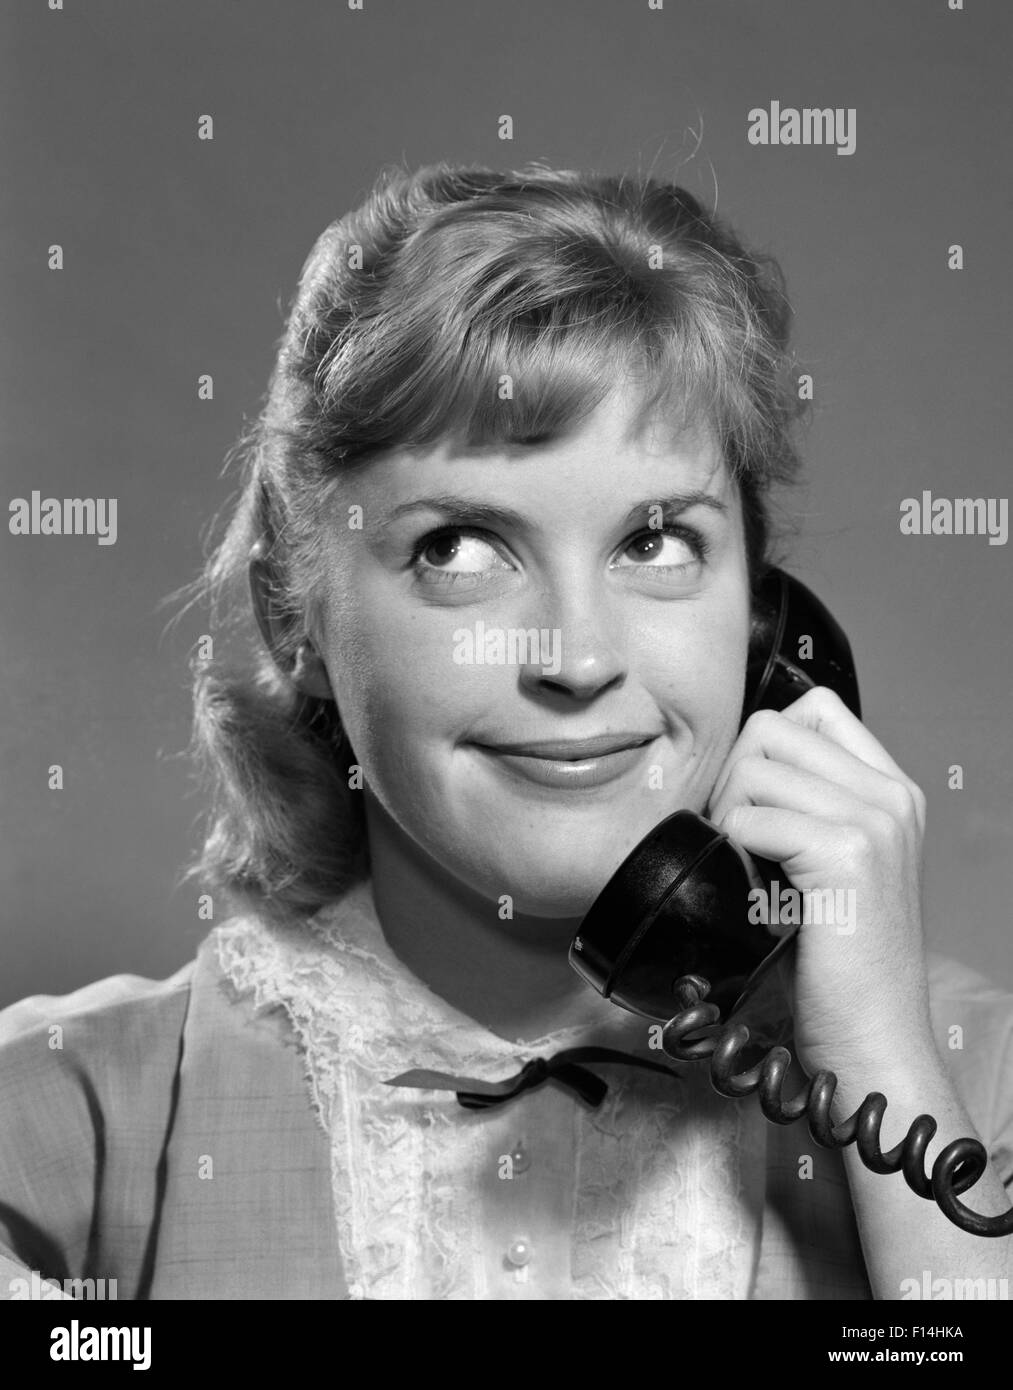 Années 1950 Années 1960 LITTLE GIRL TALKING ON TELEPHONE PAR DES YEUX SMILING PISCINE Banque D'Images